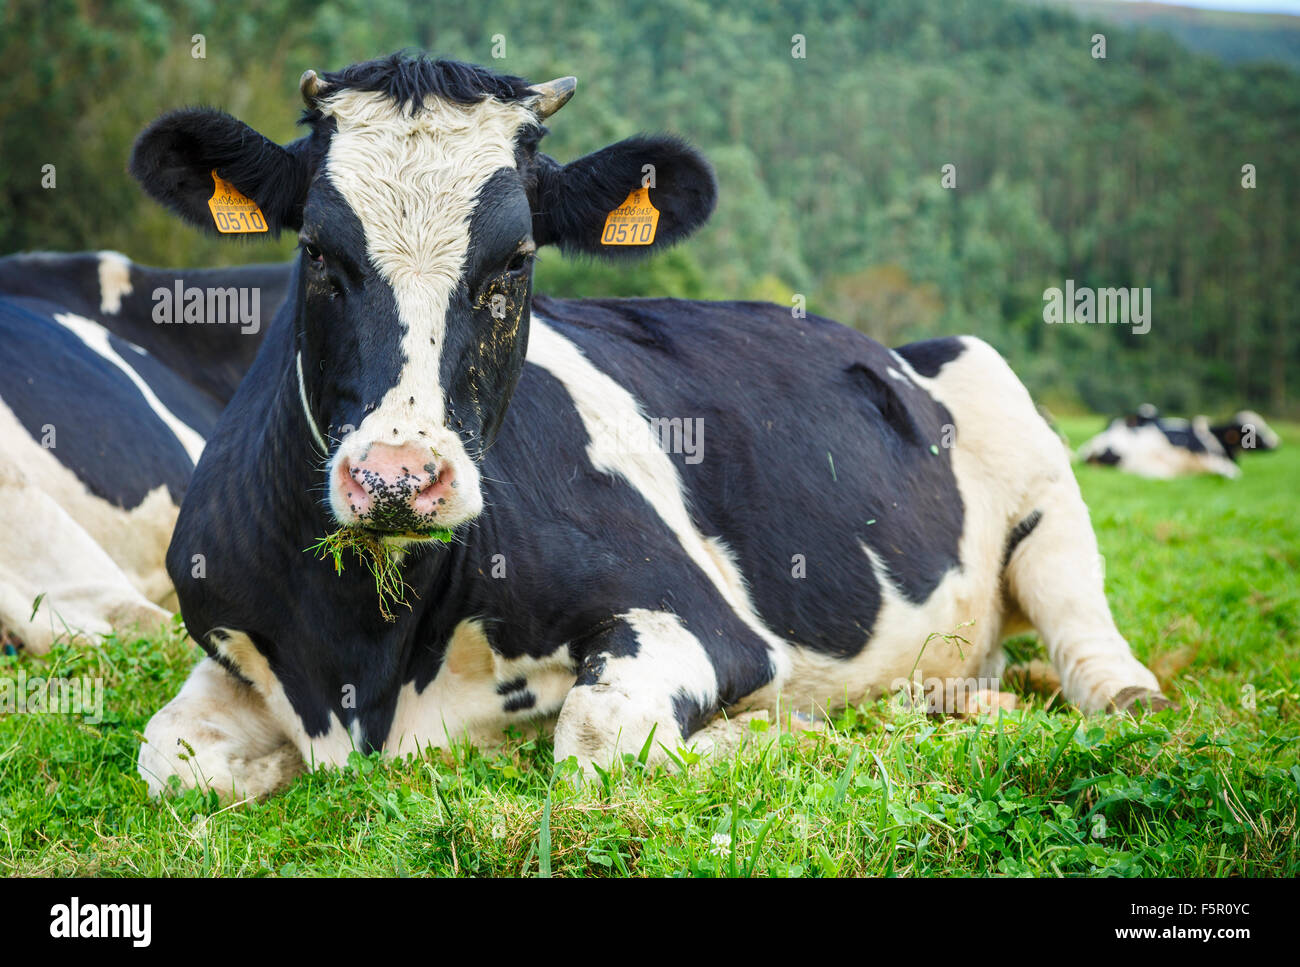 Cow in farmland. Stock Photo